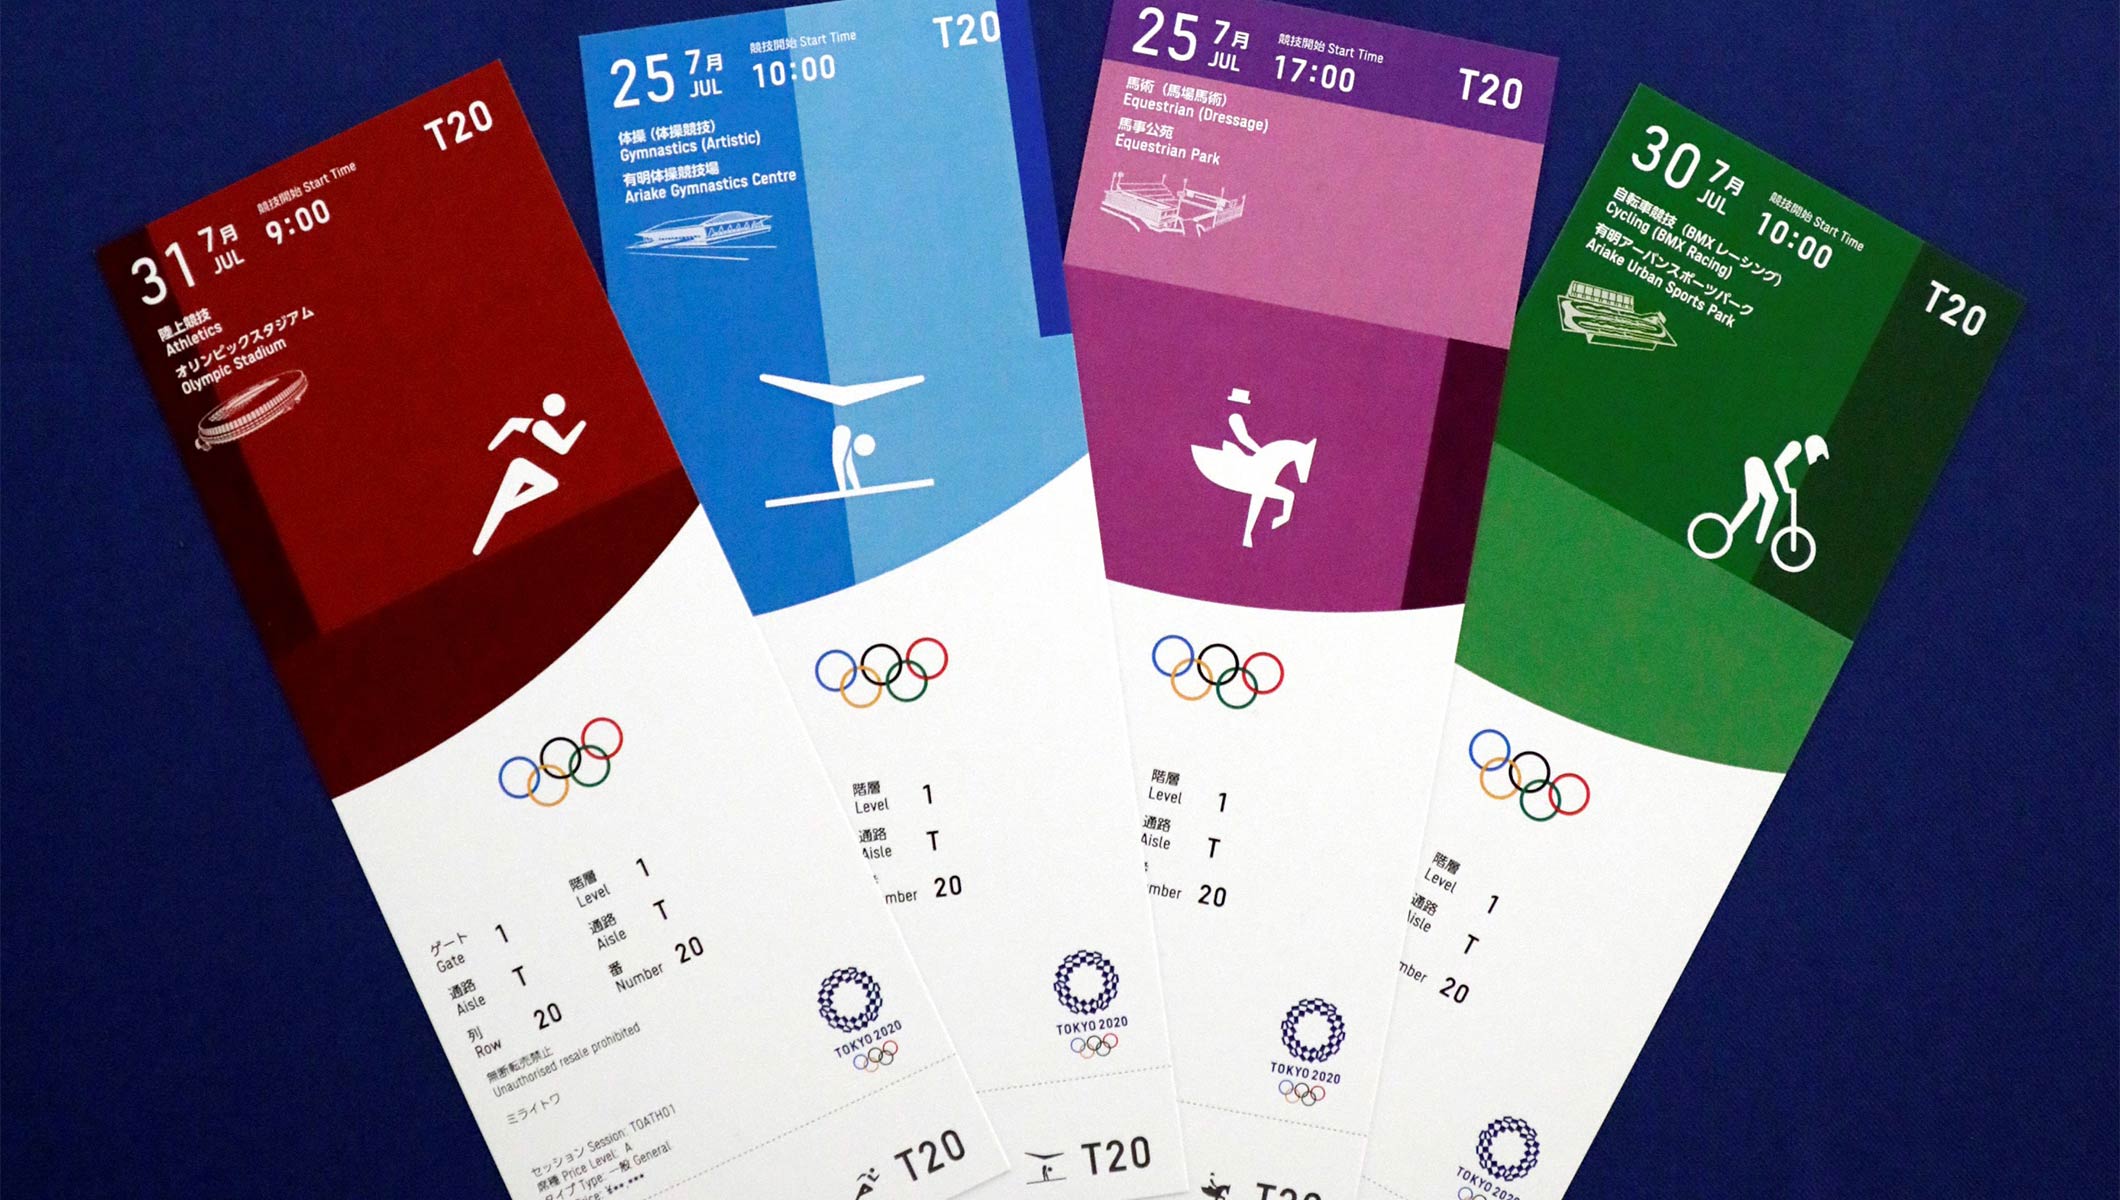 Le design des billets des Jeux Olympiques de Tokyo 2020 dévoilé